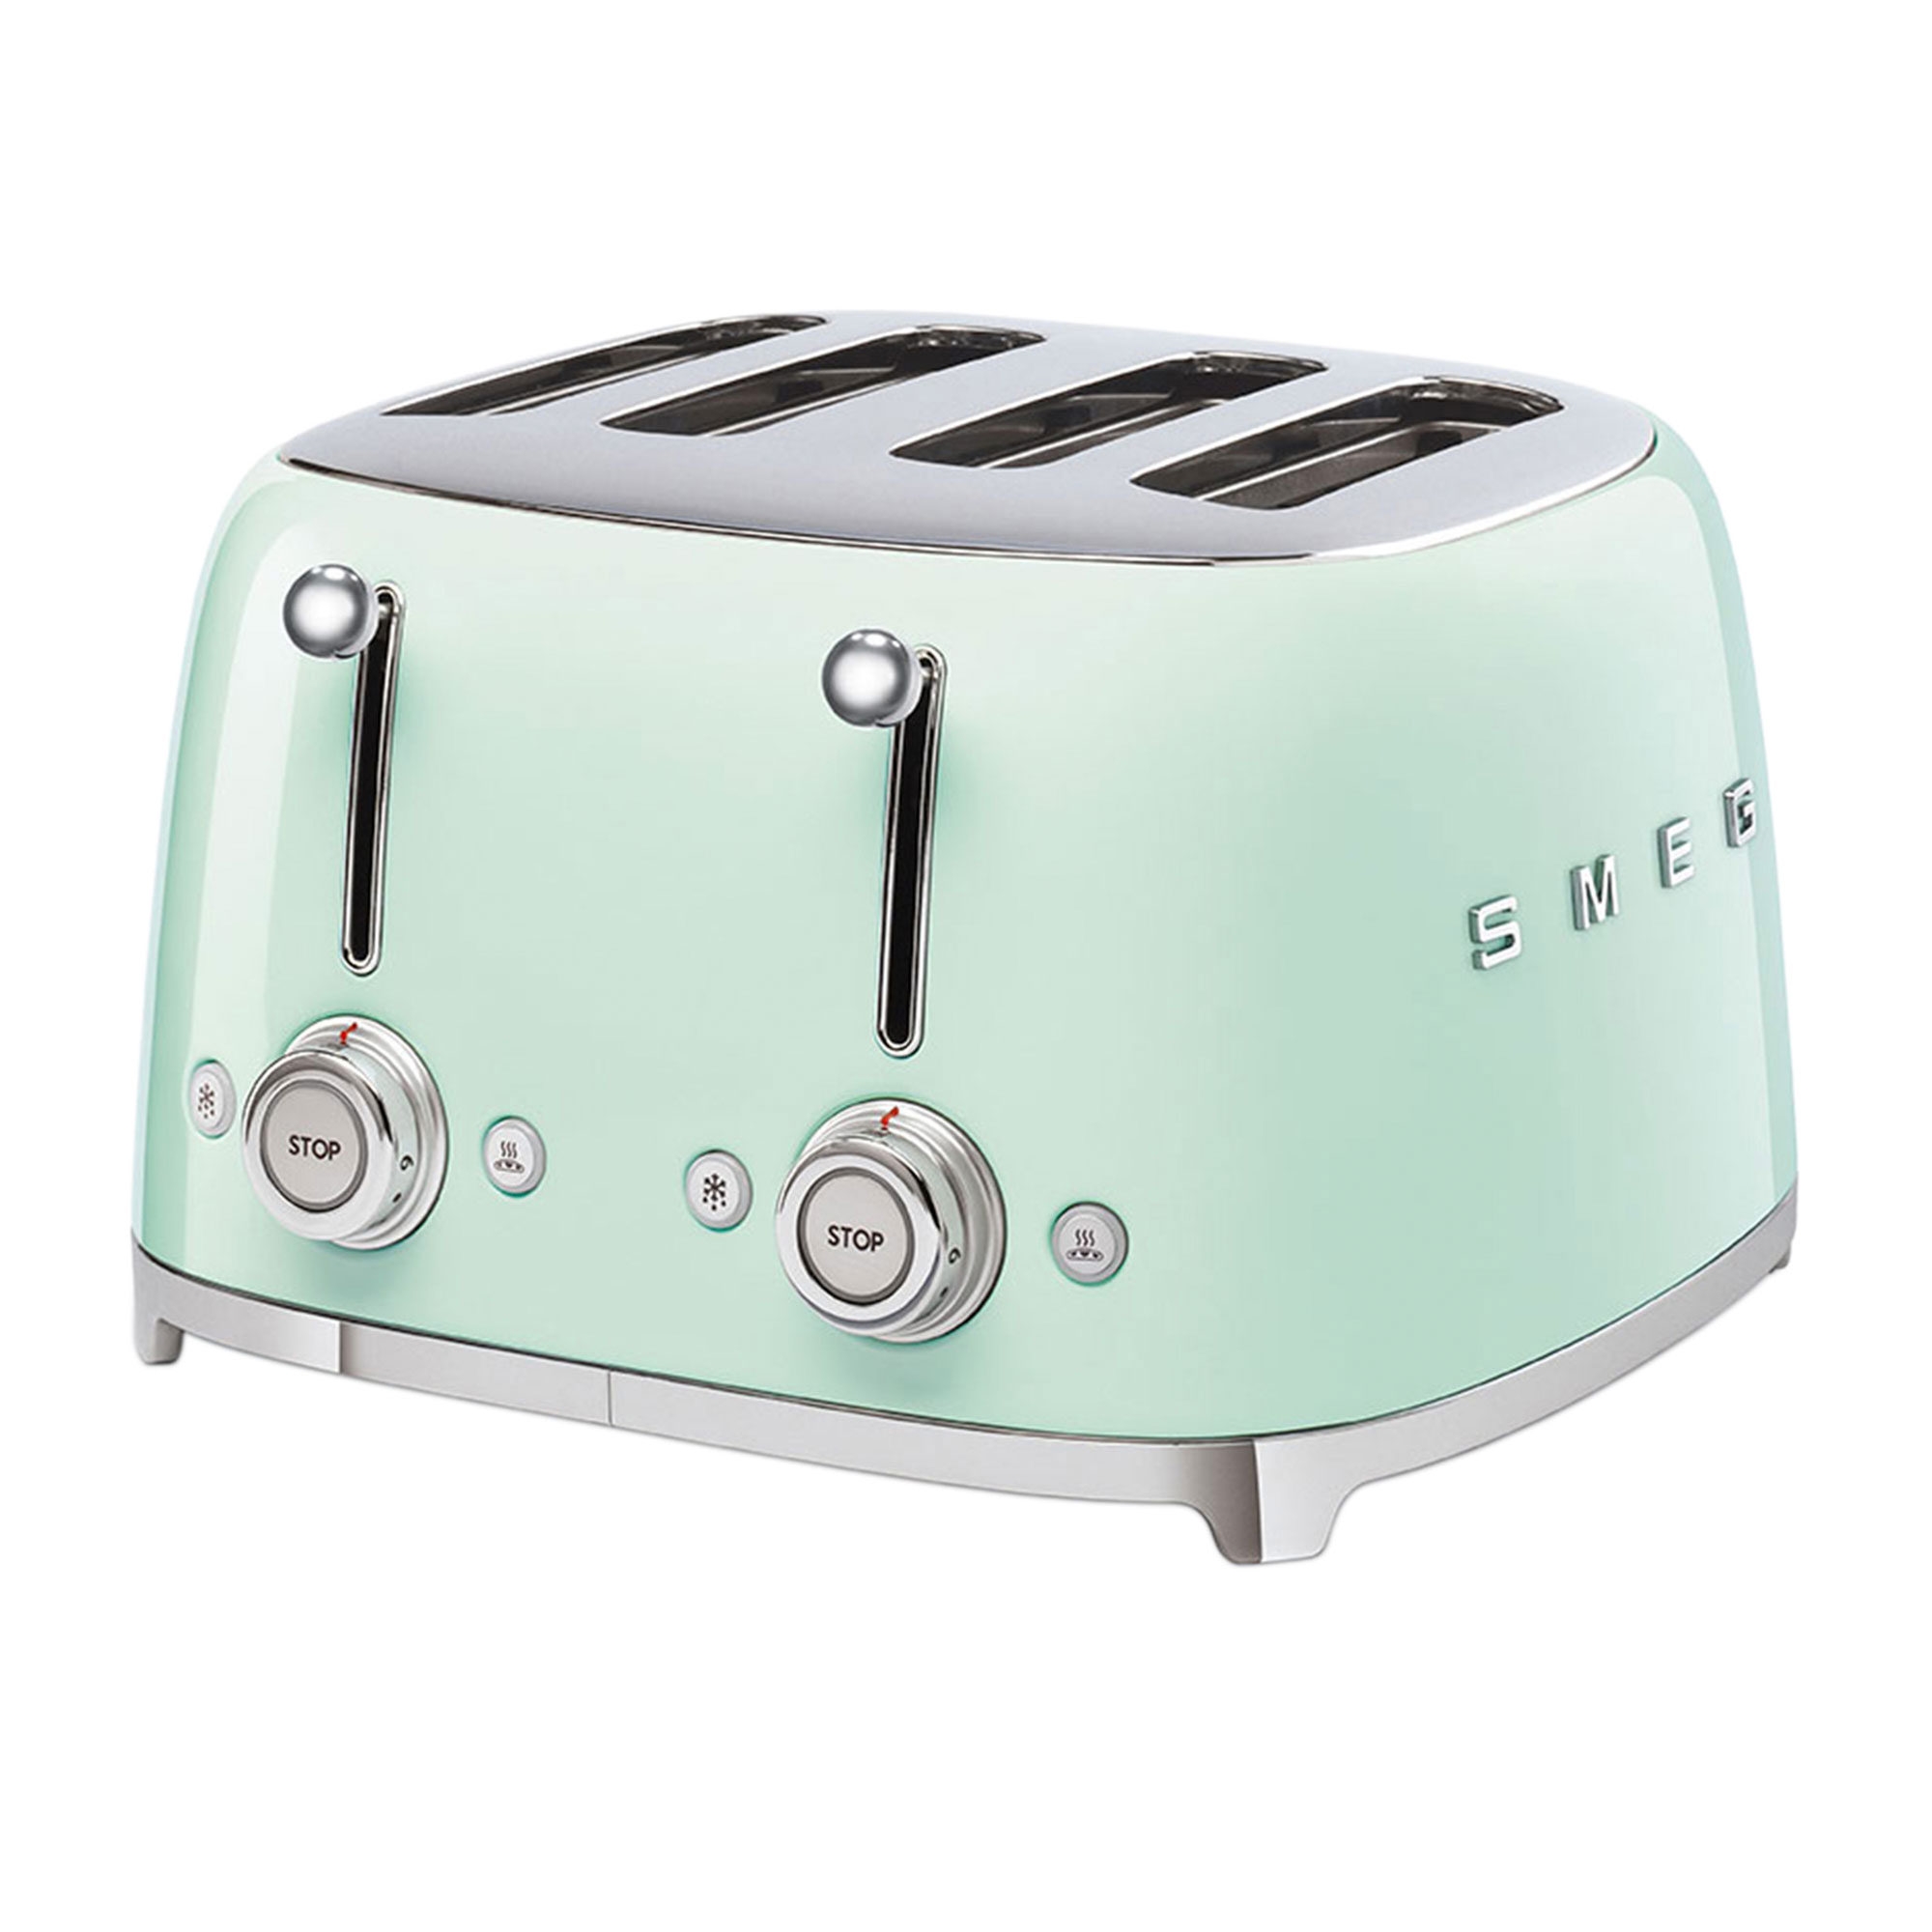 Smeg 50's Retro Style 4 Slot Toaster Pastel Green Image 1